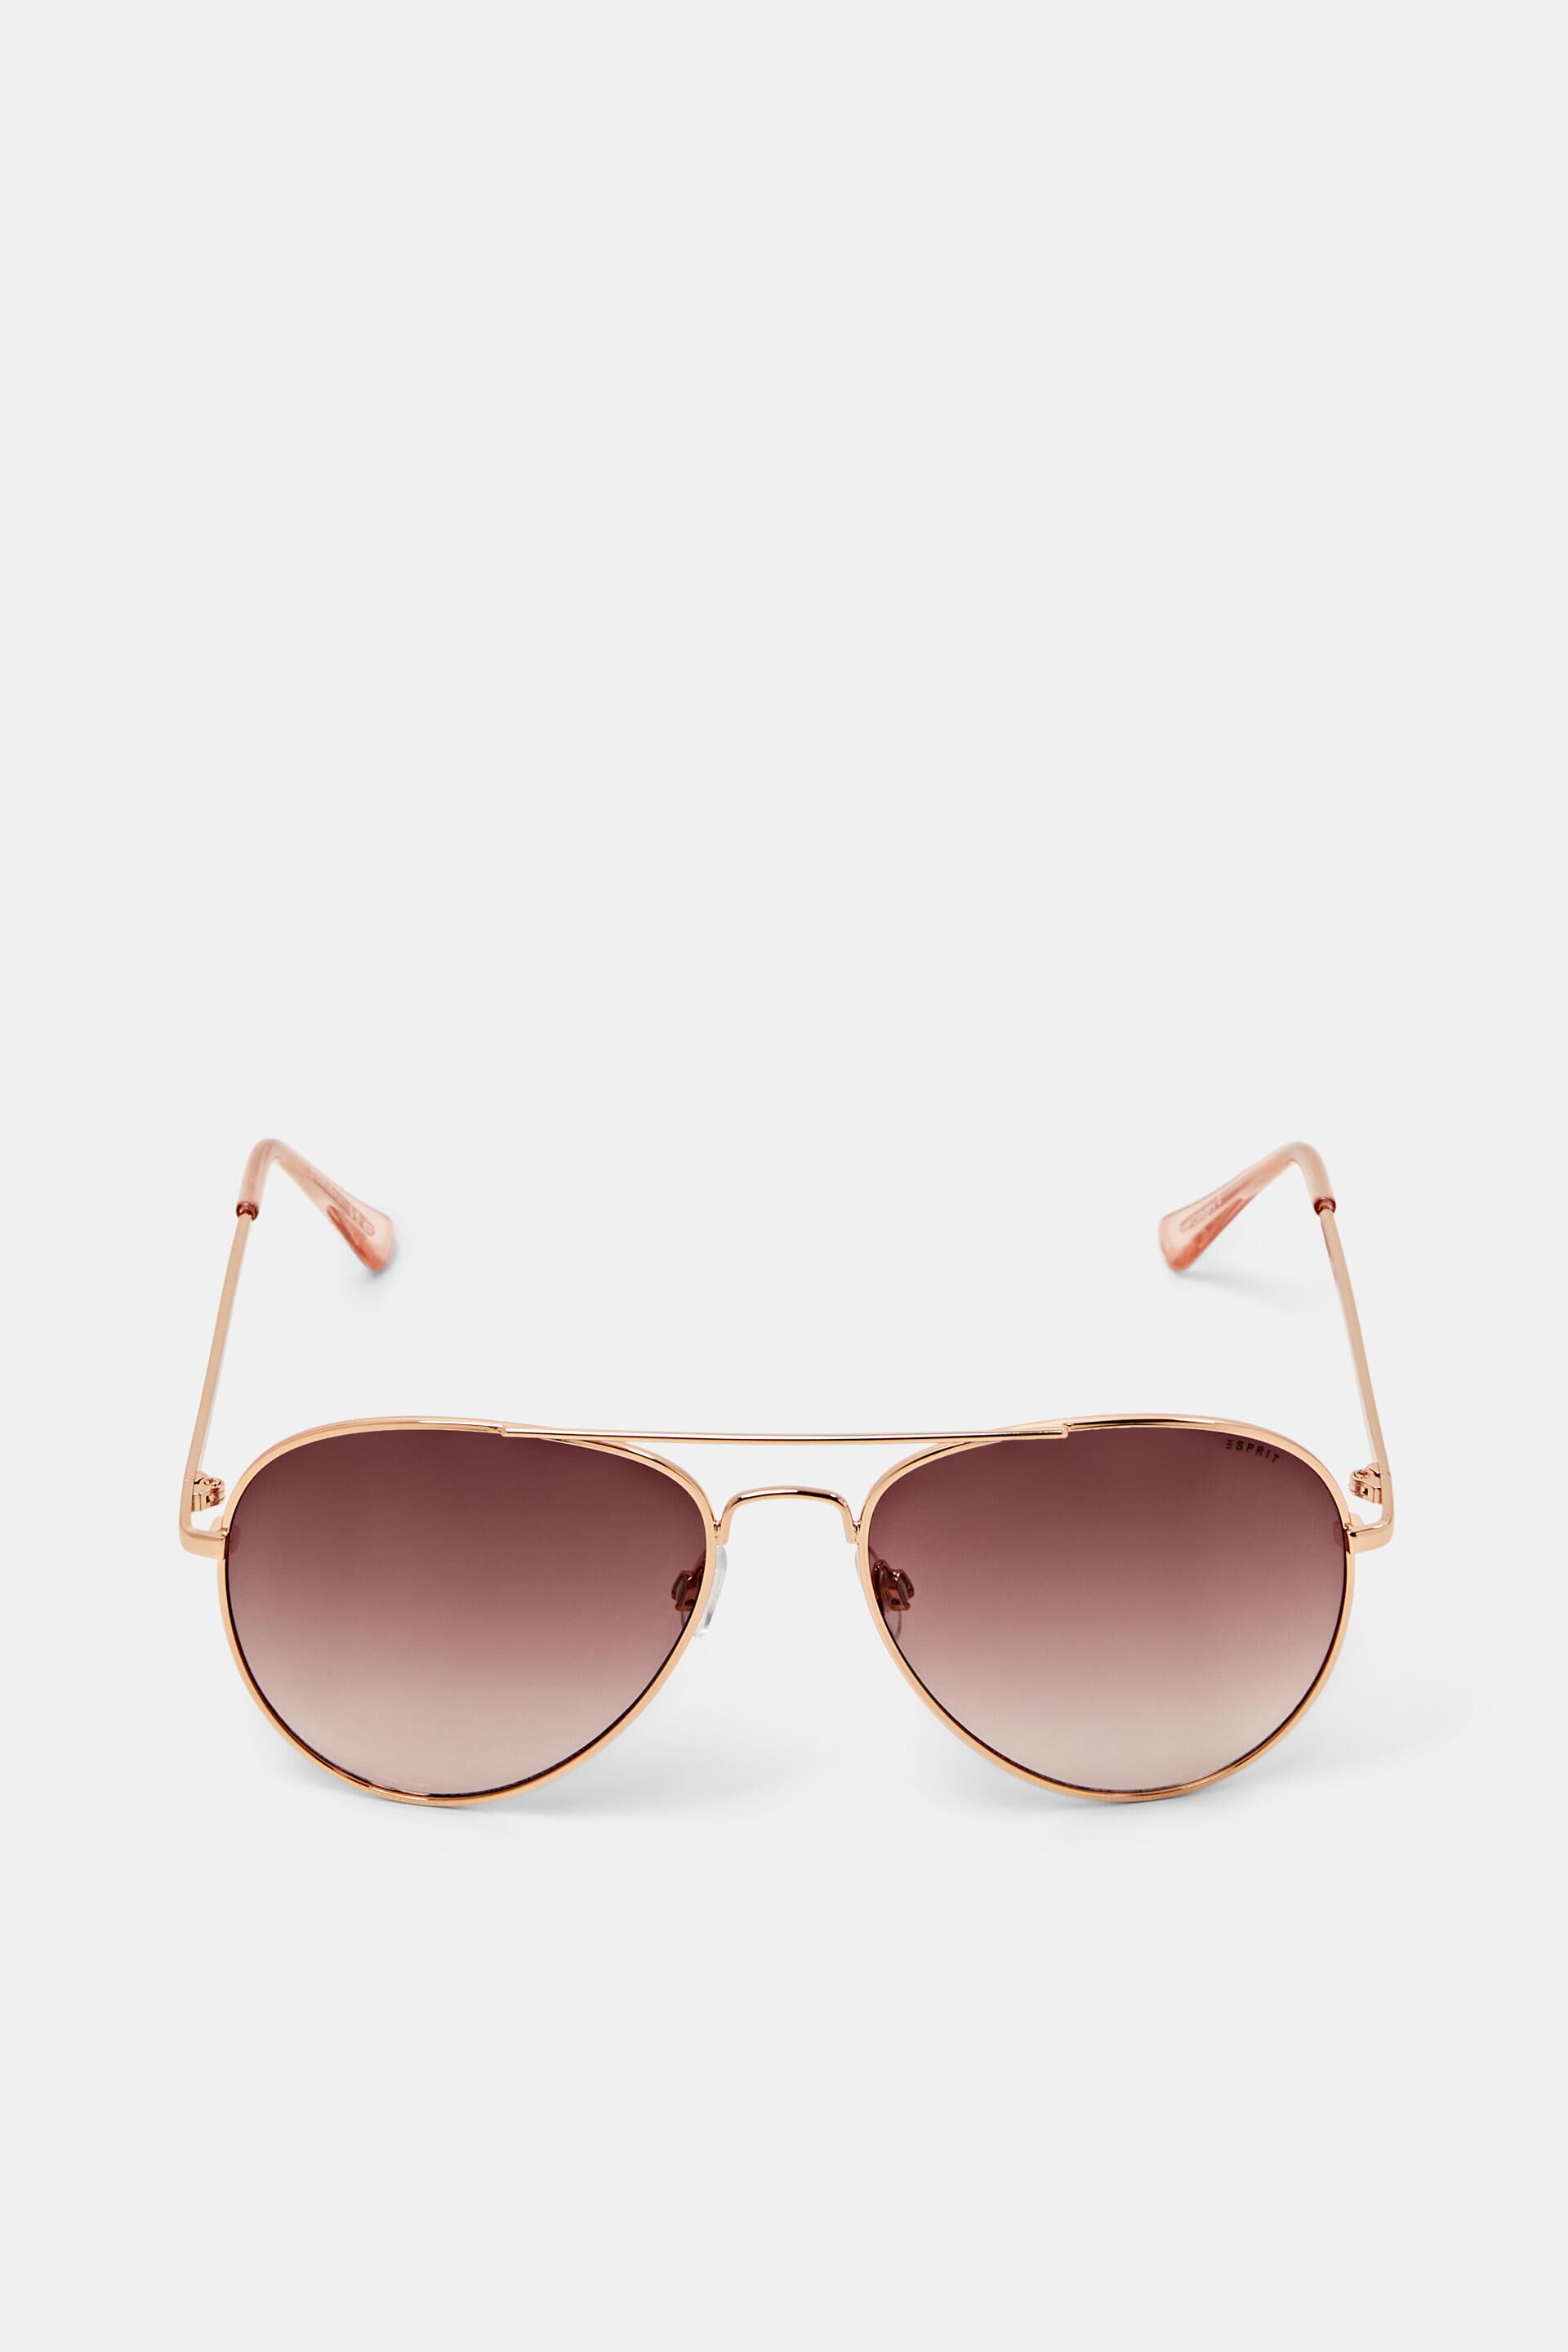 Esprit rose sunglasses with Unisex aviator tinted lenses